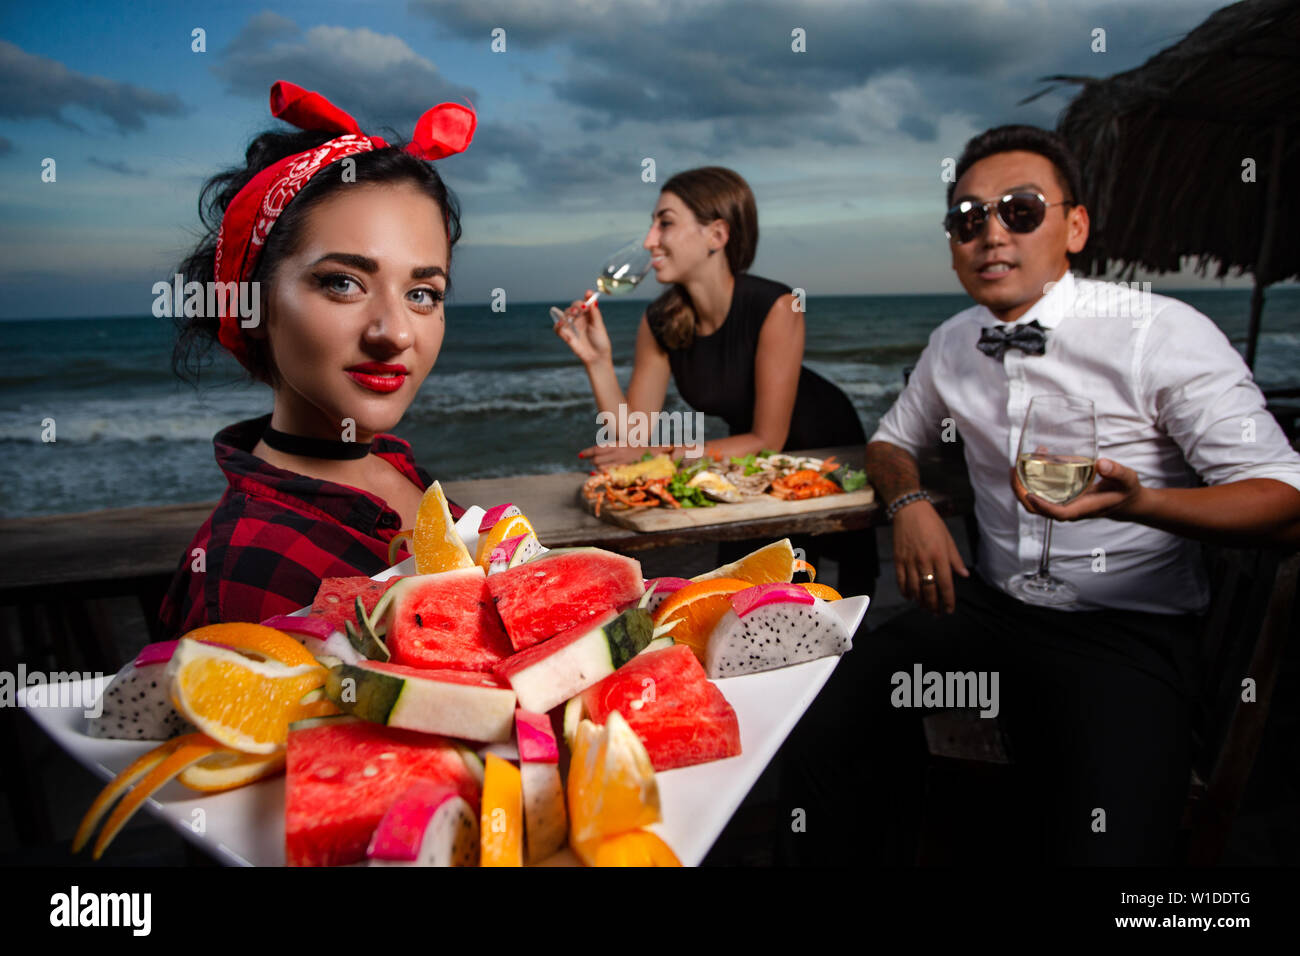 Amis dans un restaurant de fruits de mer - cheers clink verres et serveuse avec fruit dans l'avant-plan Banque D'Images